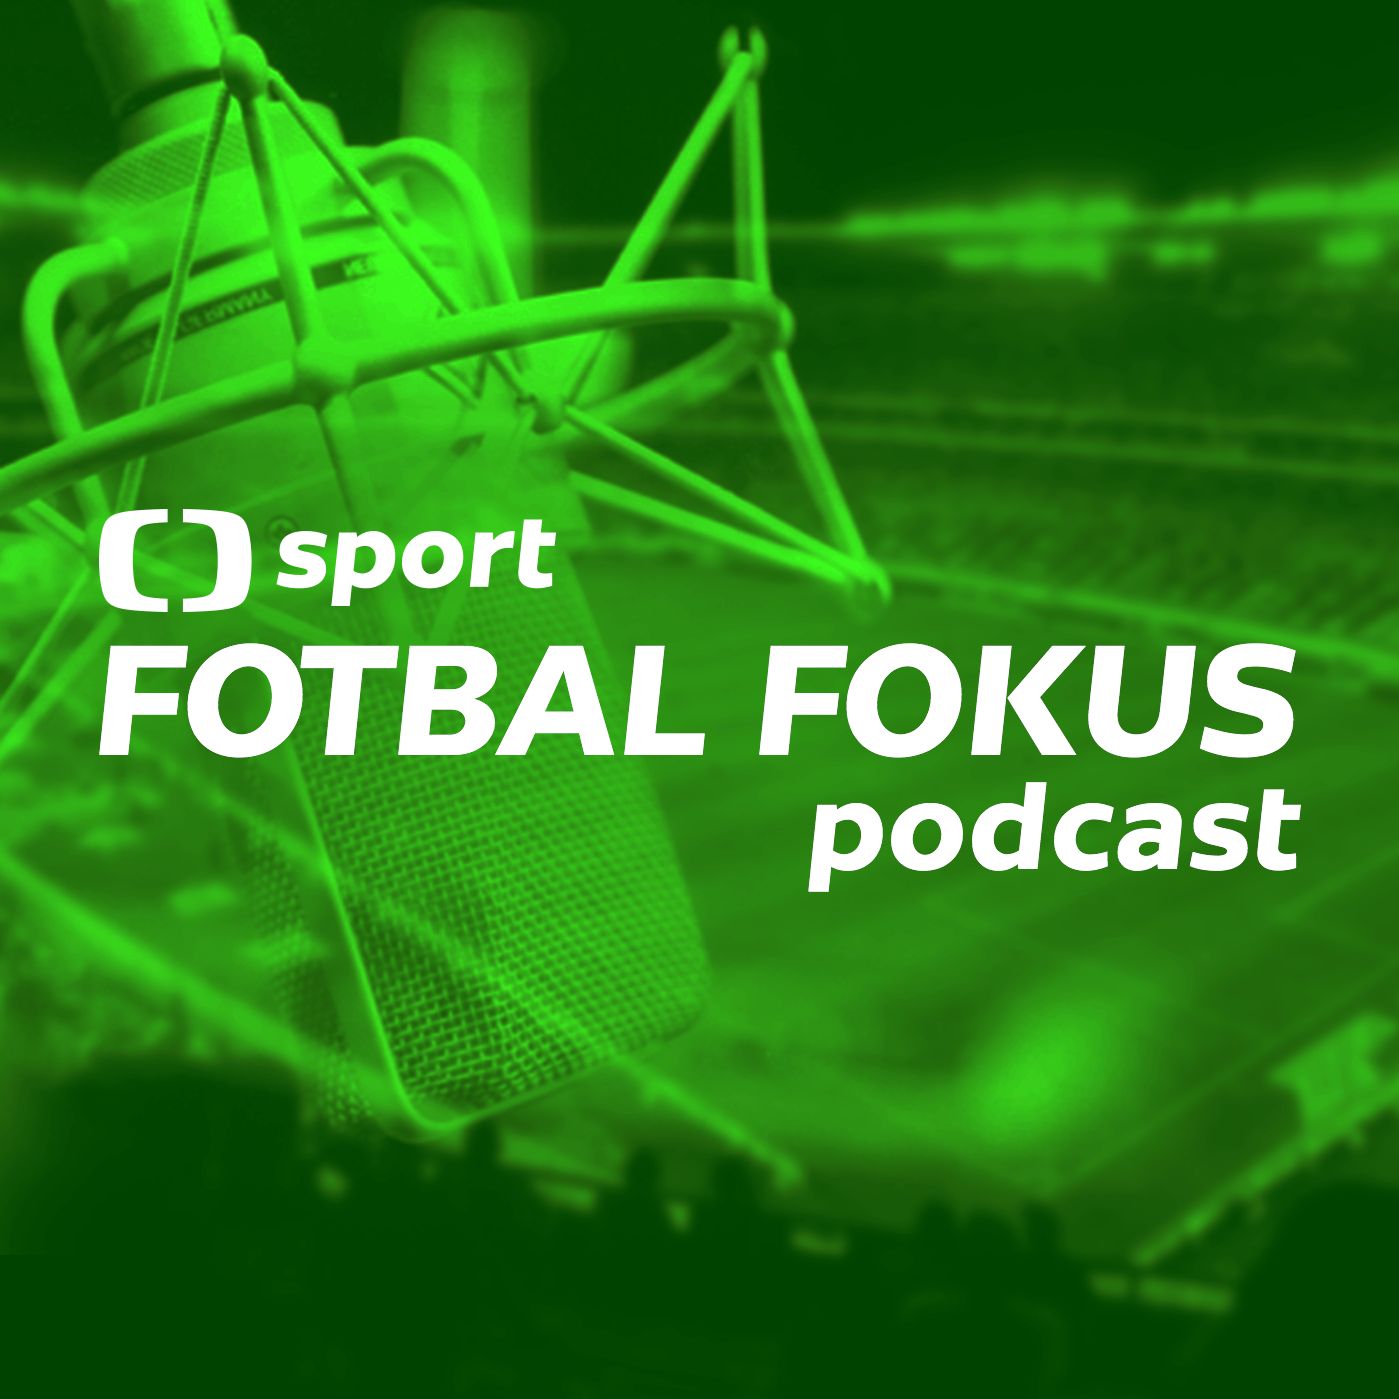 Fotbal fokus podcast: Vytáhne Rada Spartu z krize, anebo ji ještě více potopí?